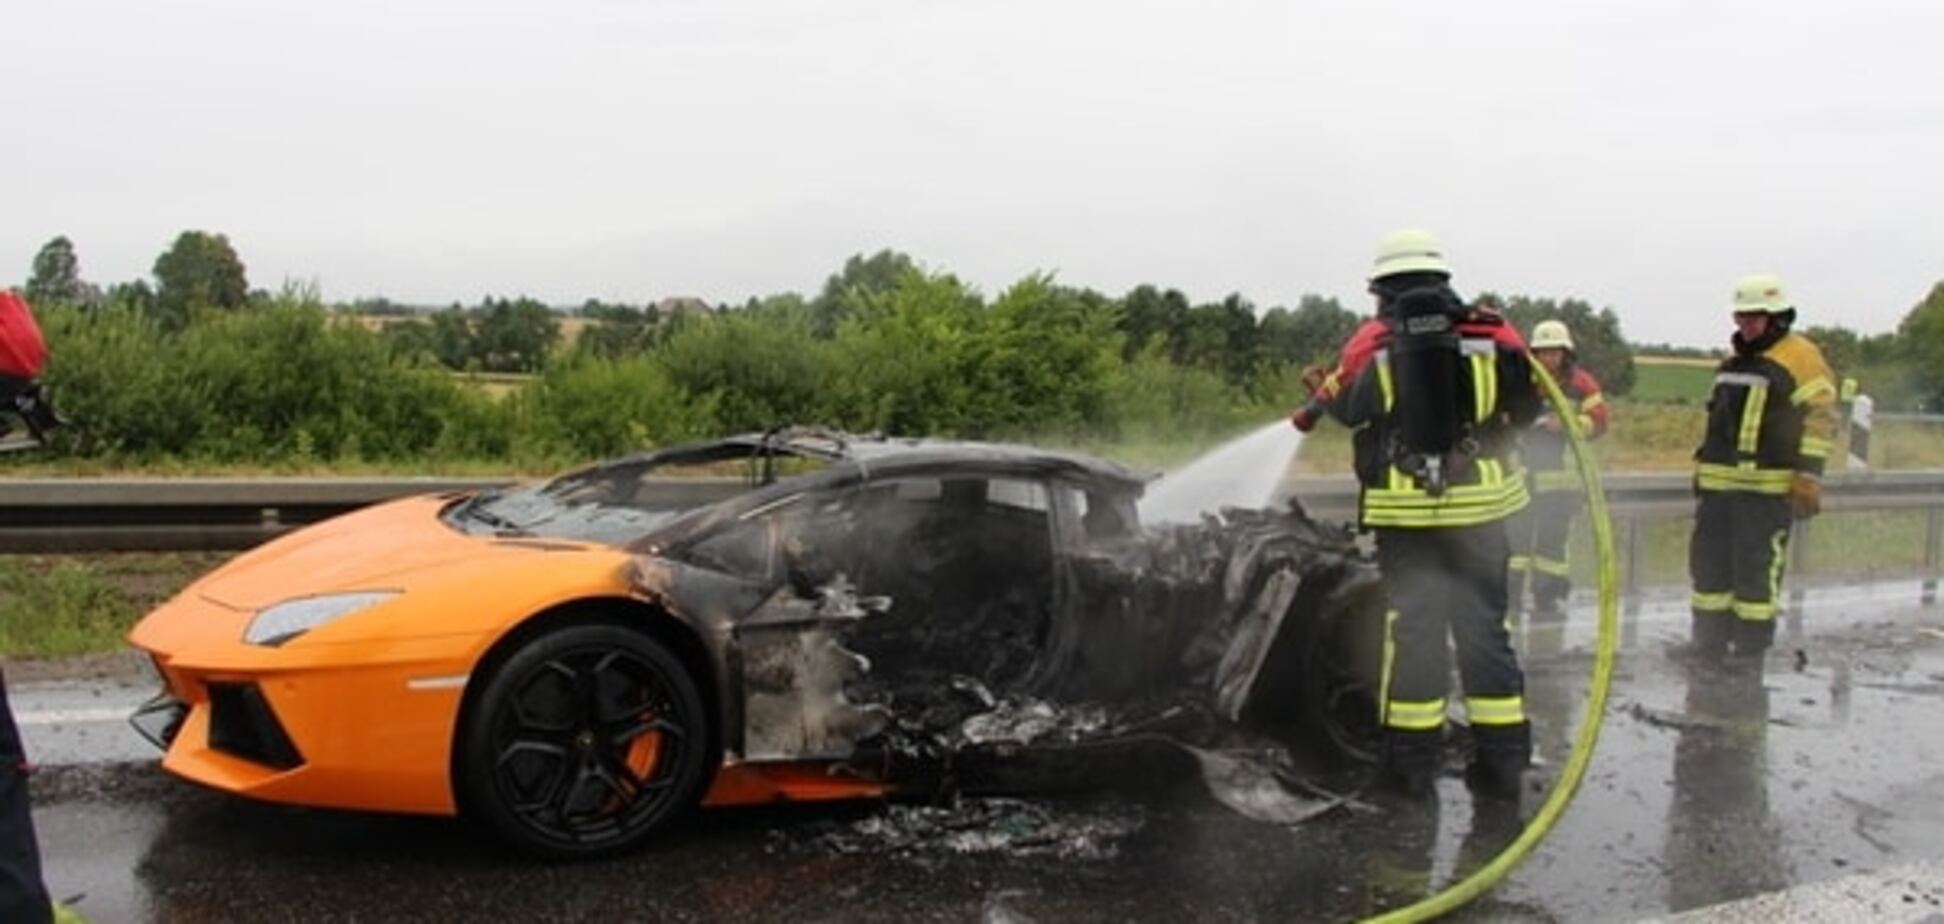 Видео с загоревшимся Lamborghini в Дубае взорвало интернет